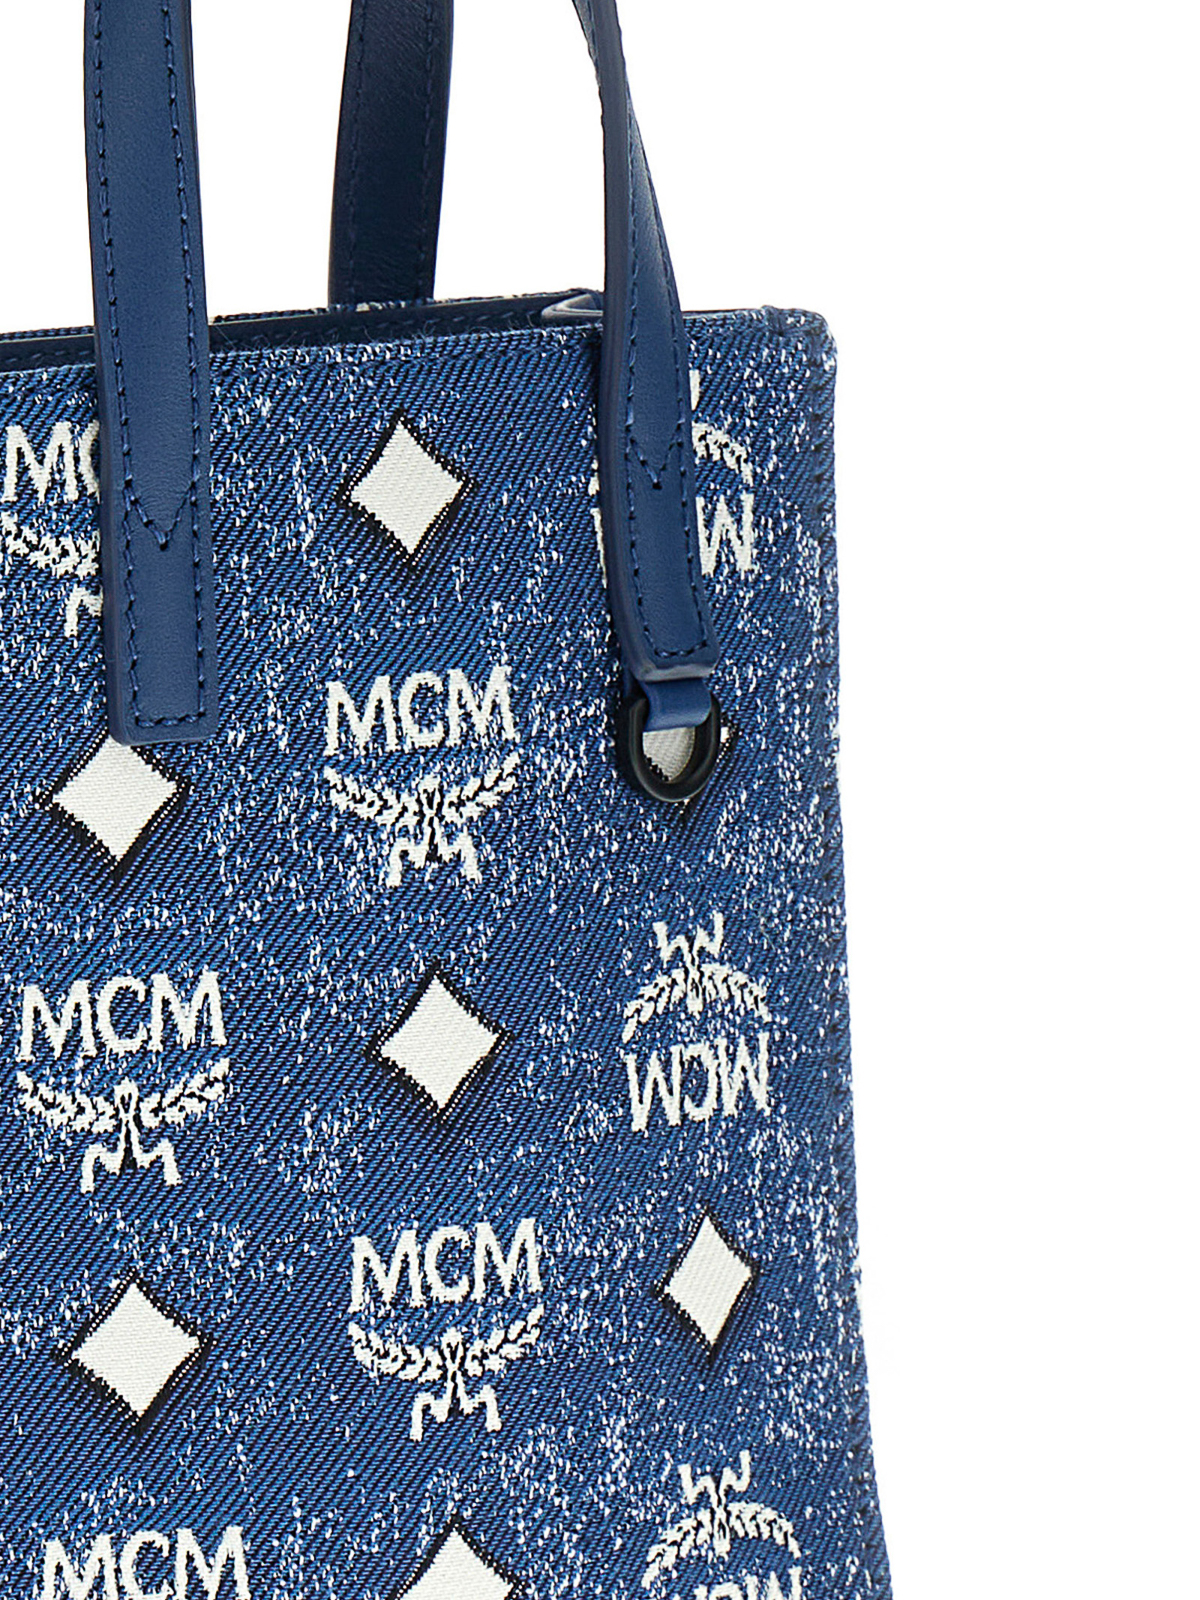 MCM Blue Tote Bags